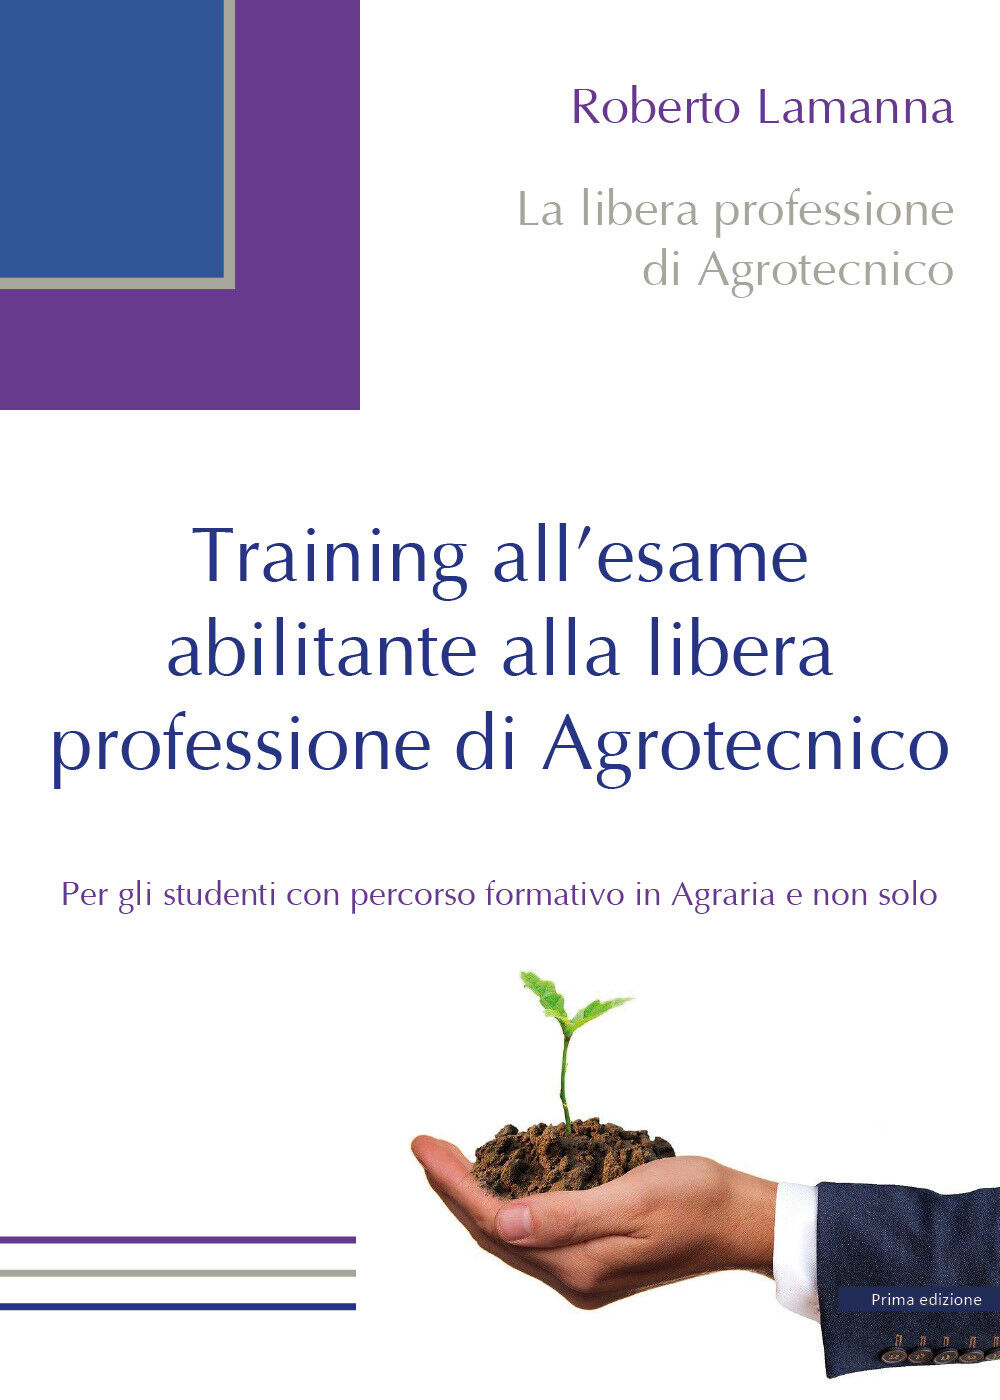 Training alL'esame abilitante alla libera professione di Agrotecnico. (Lamanna)